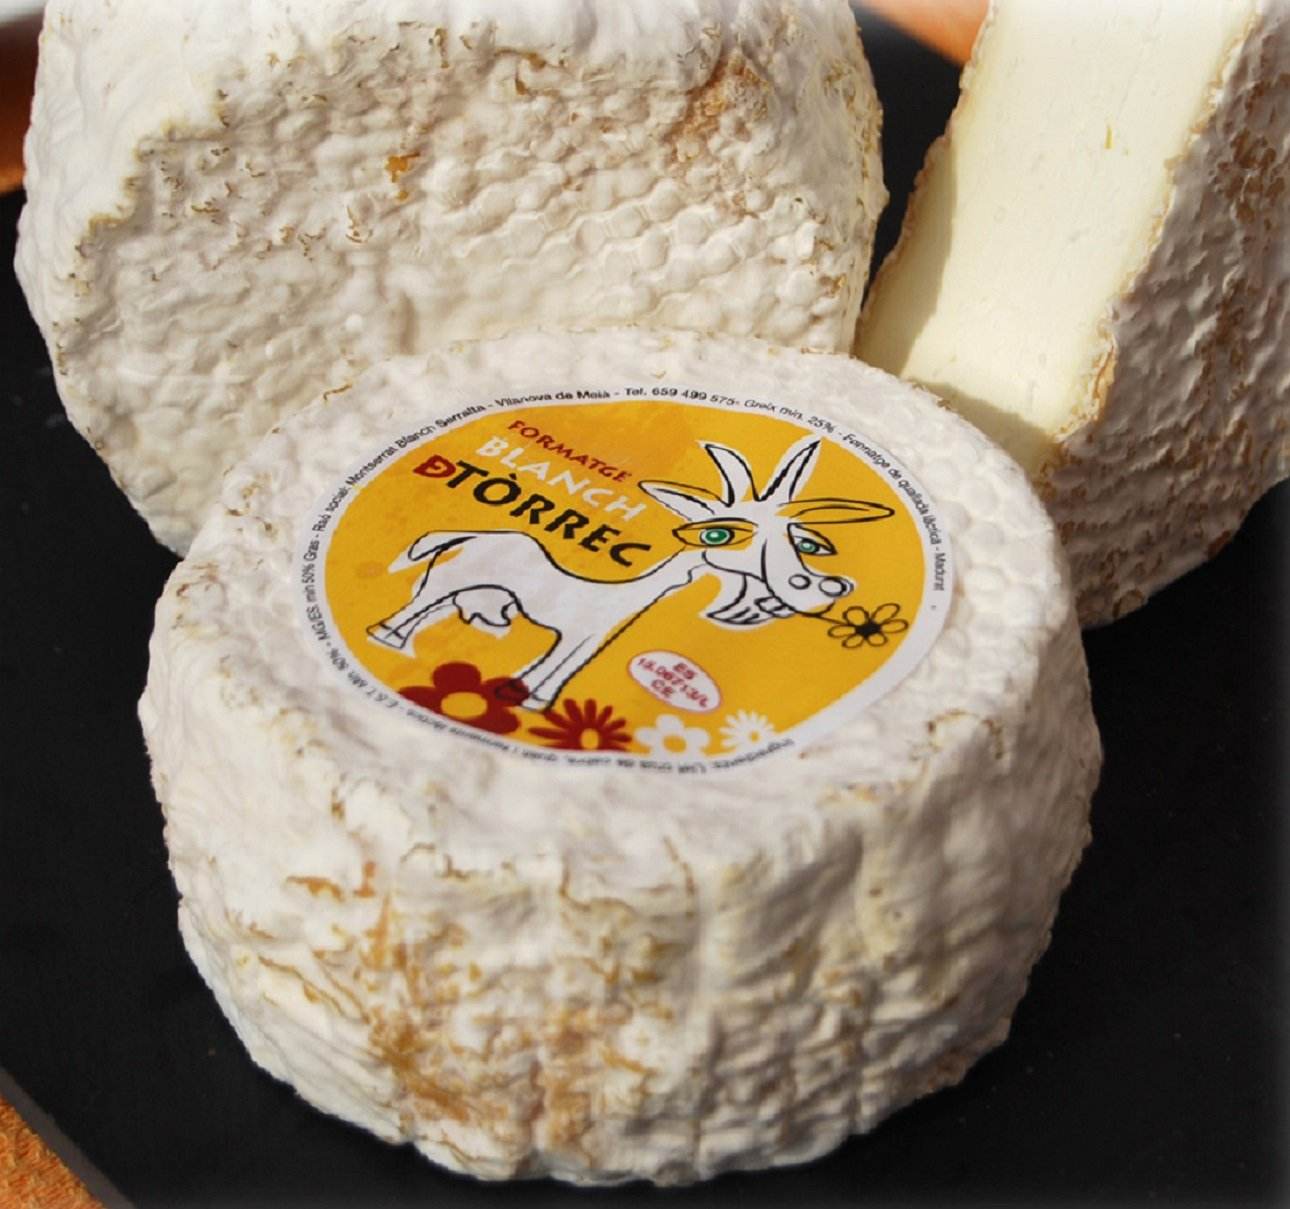 El Blanch de Tòrrec: el queso elaborado con las cabras más viejas de Catalunya